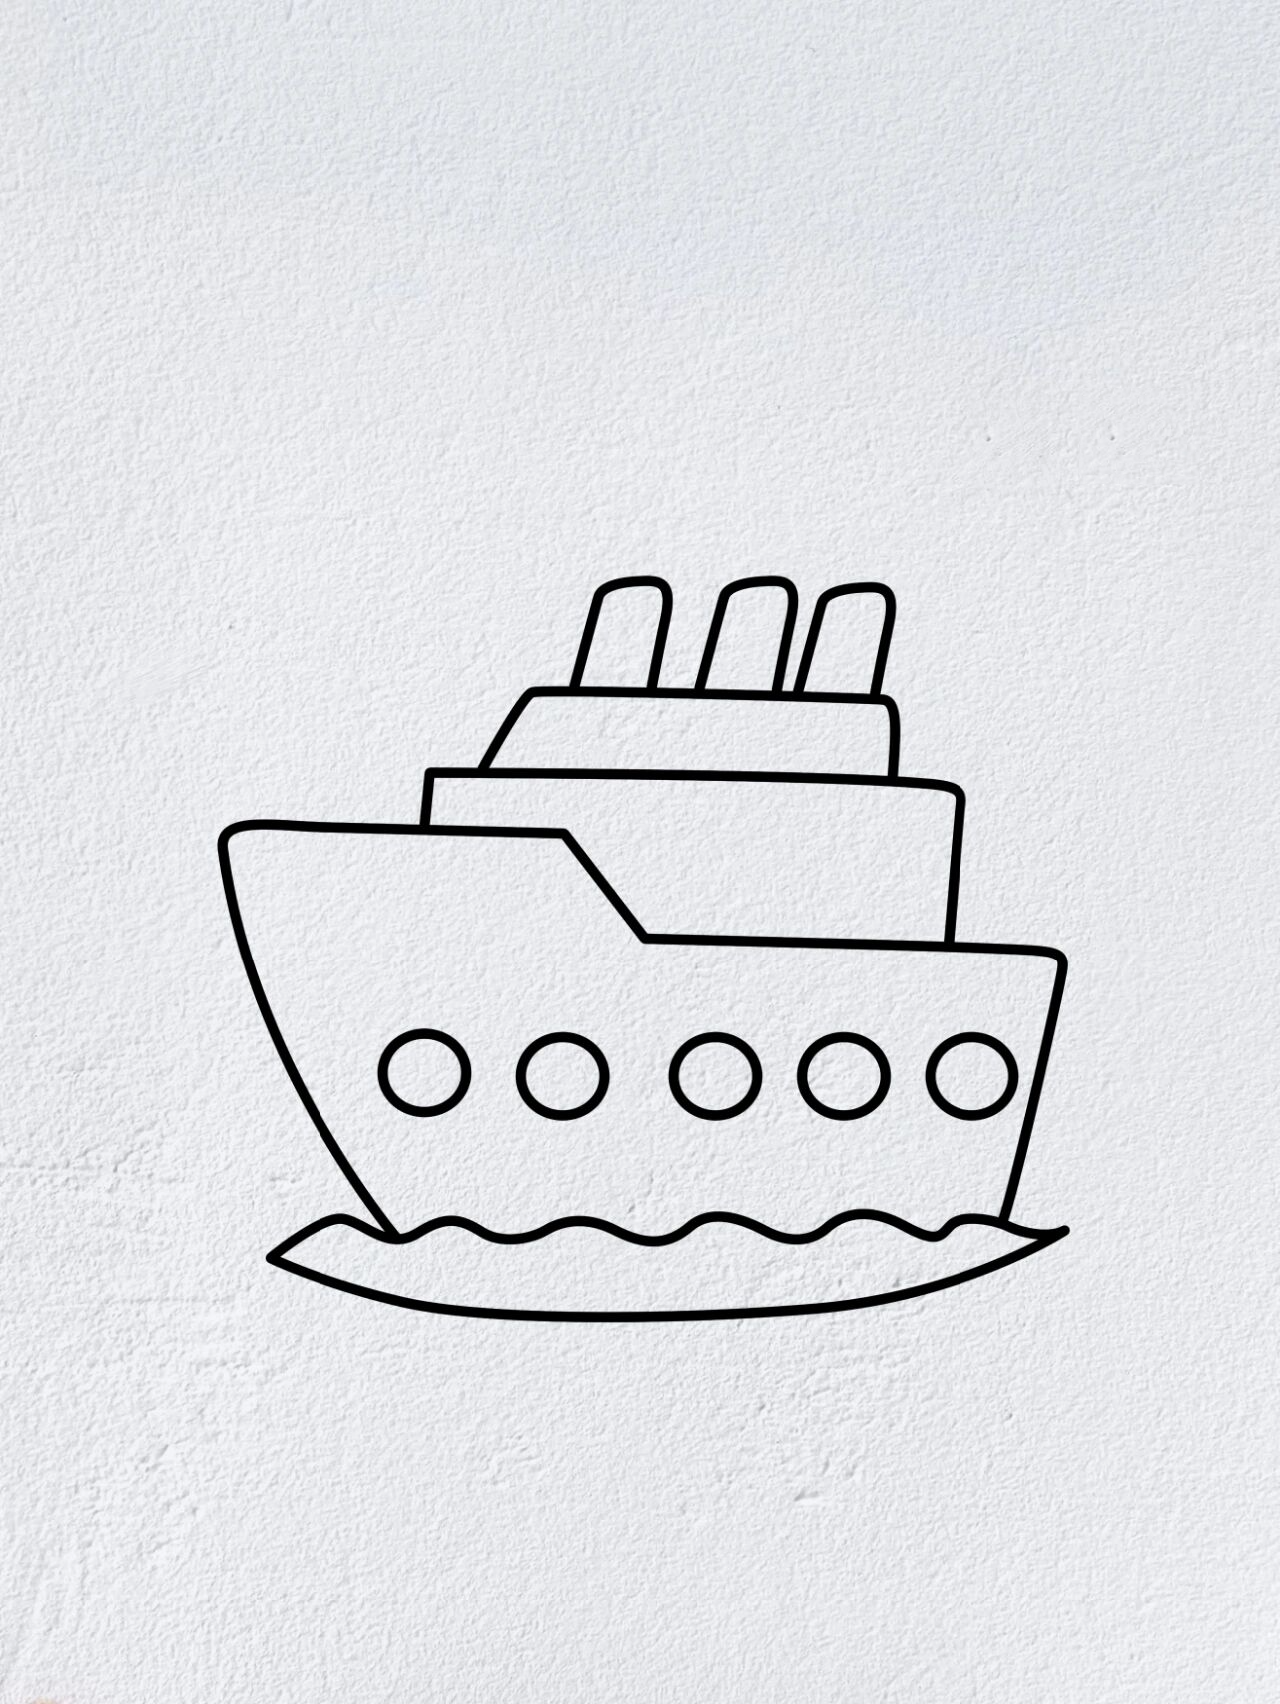 海上轮船简笔画简单图片